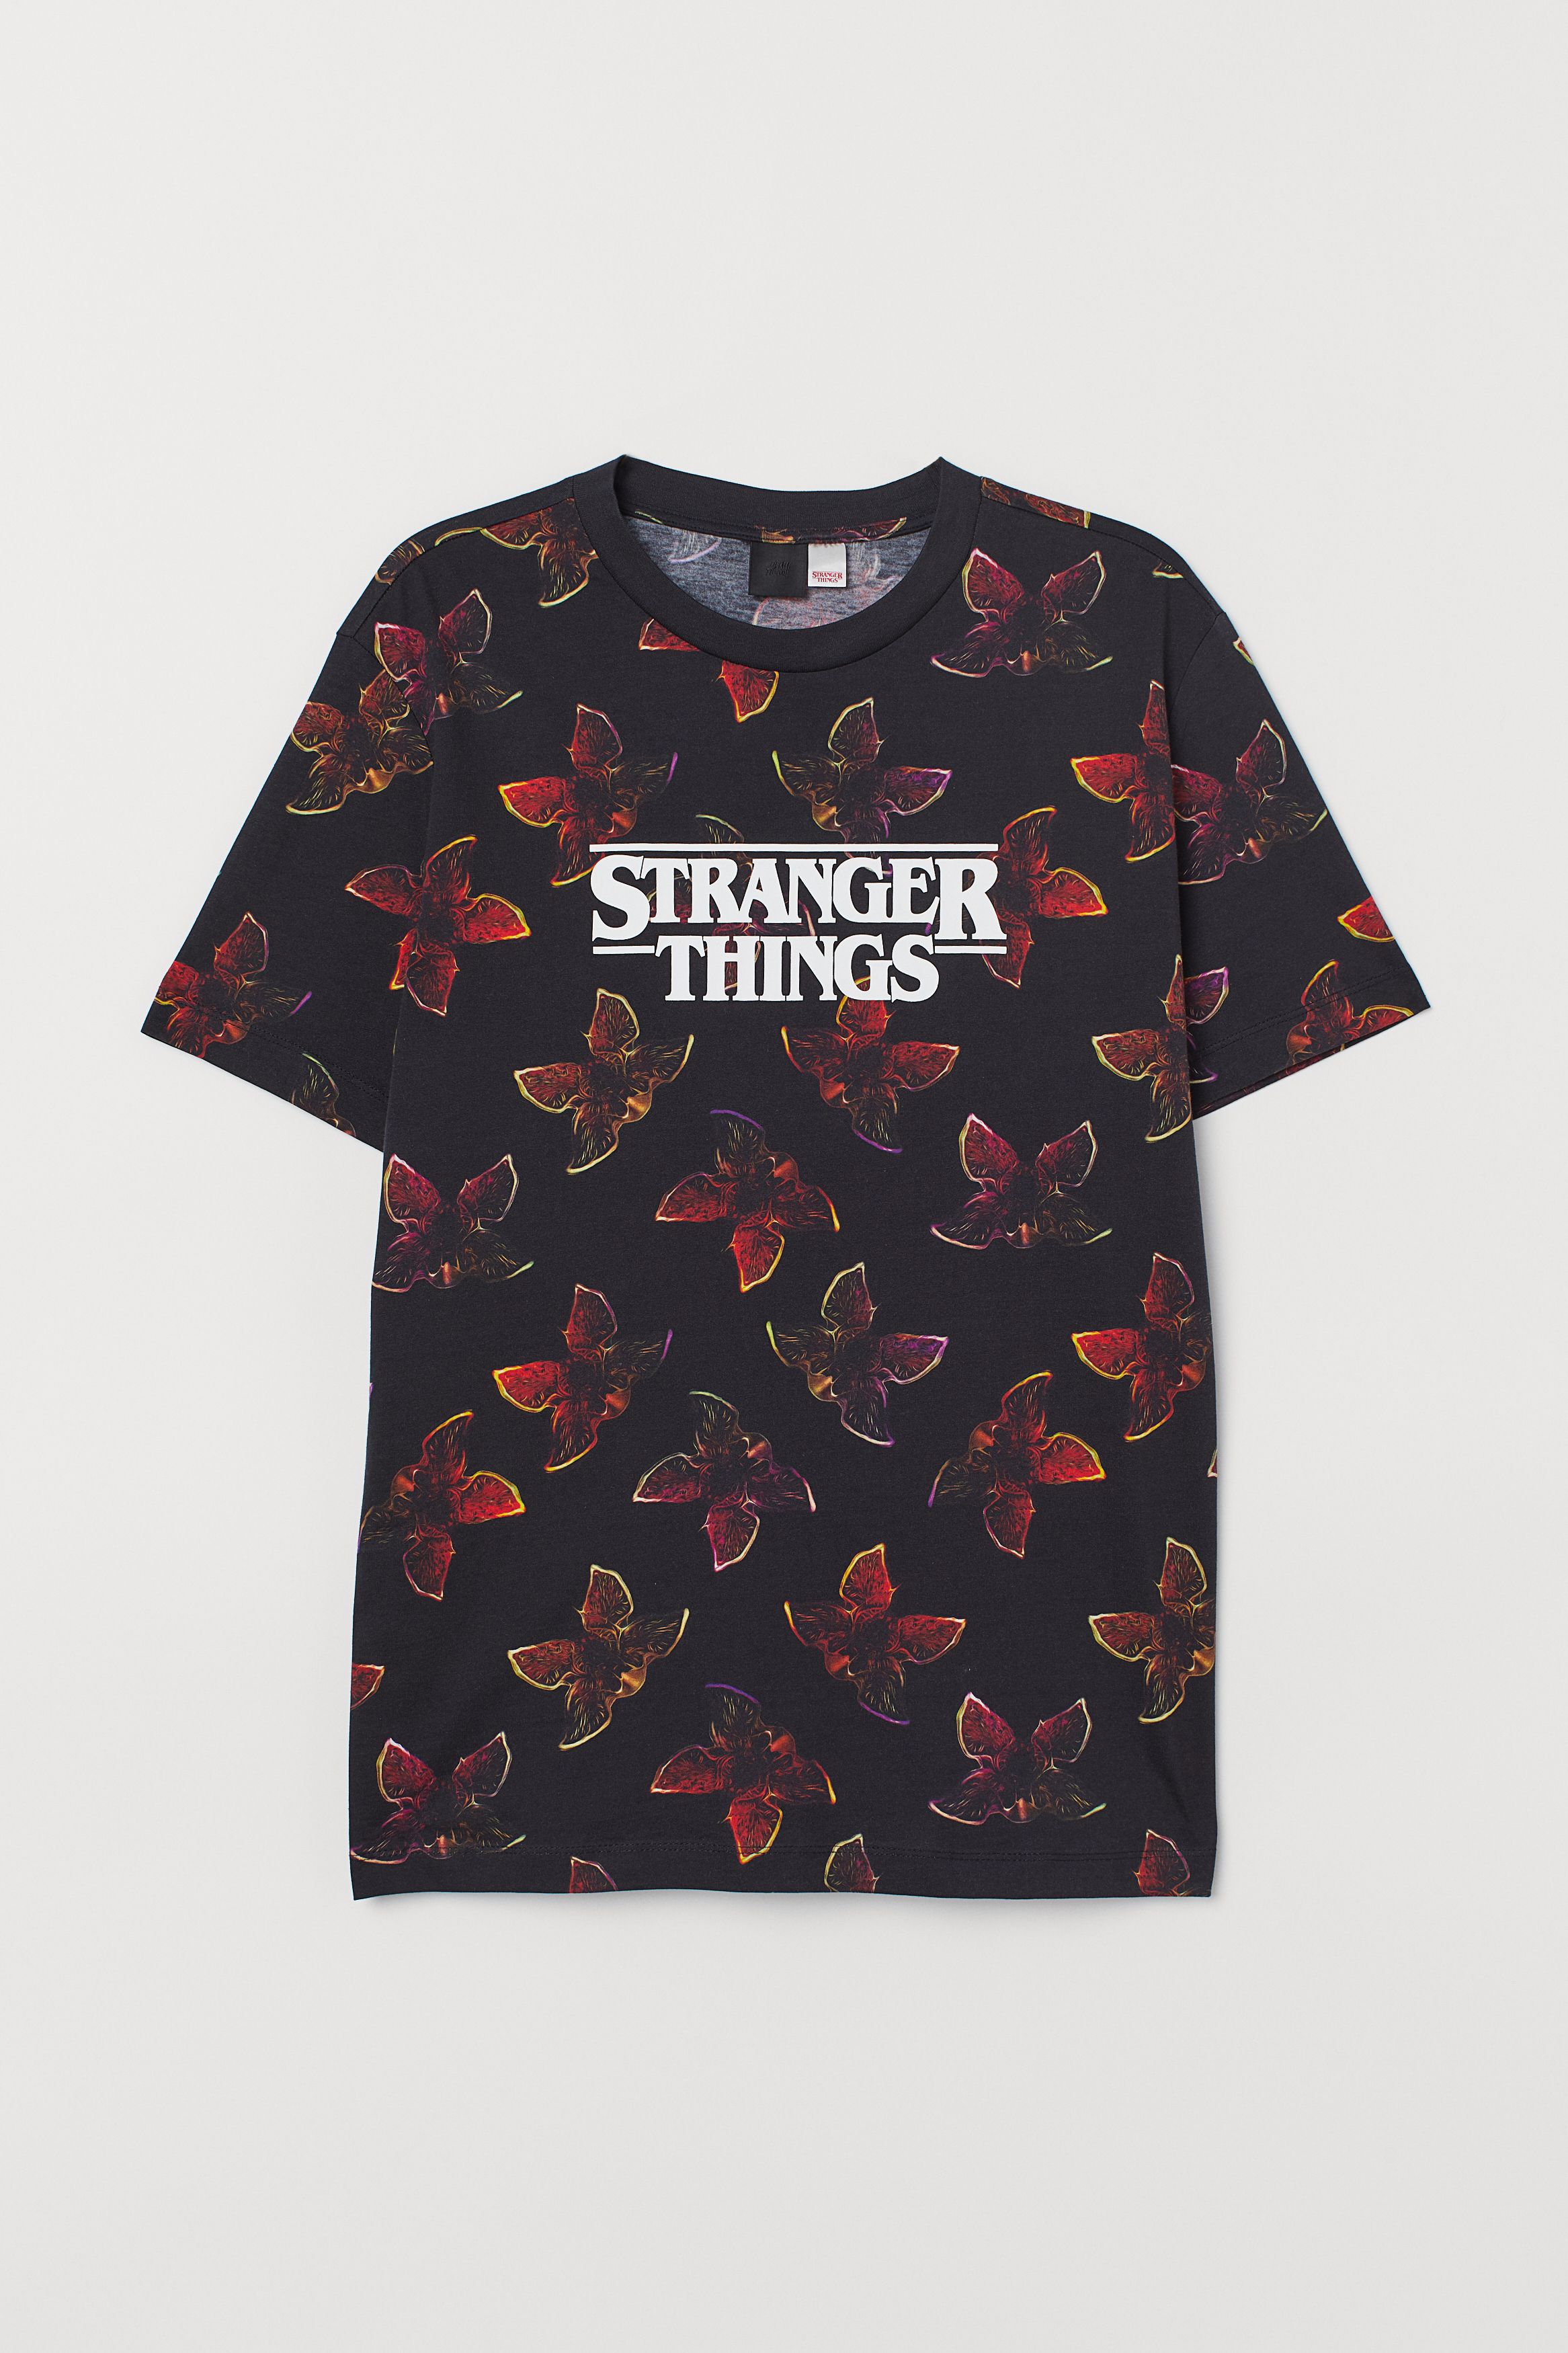 Venta > ropa de stranger things > en stock